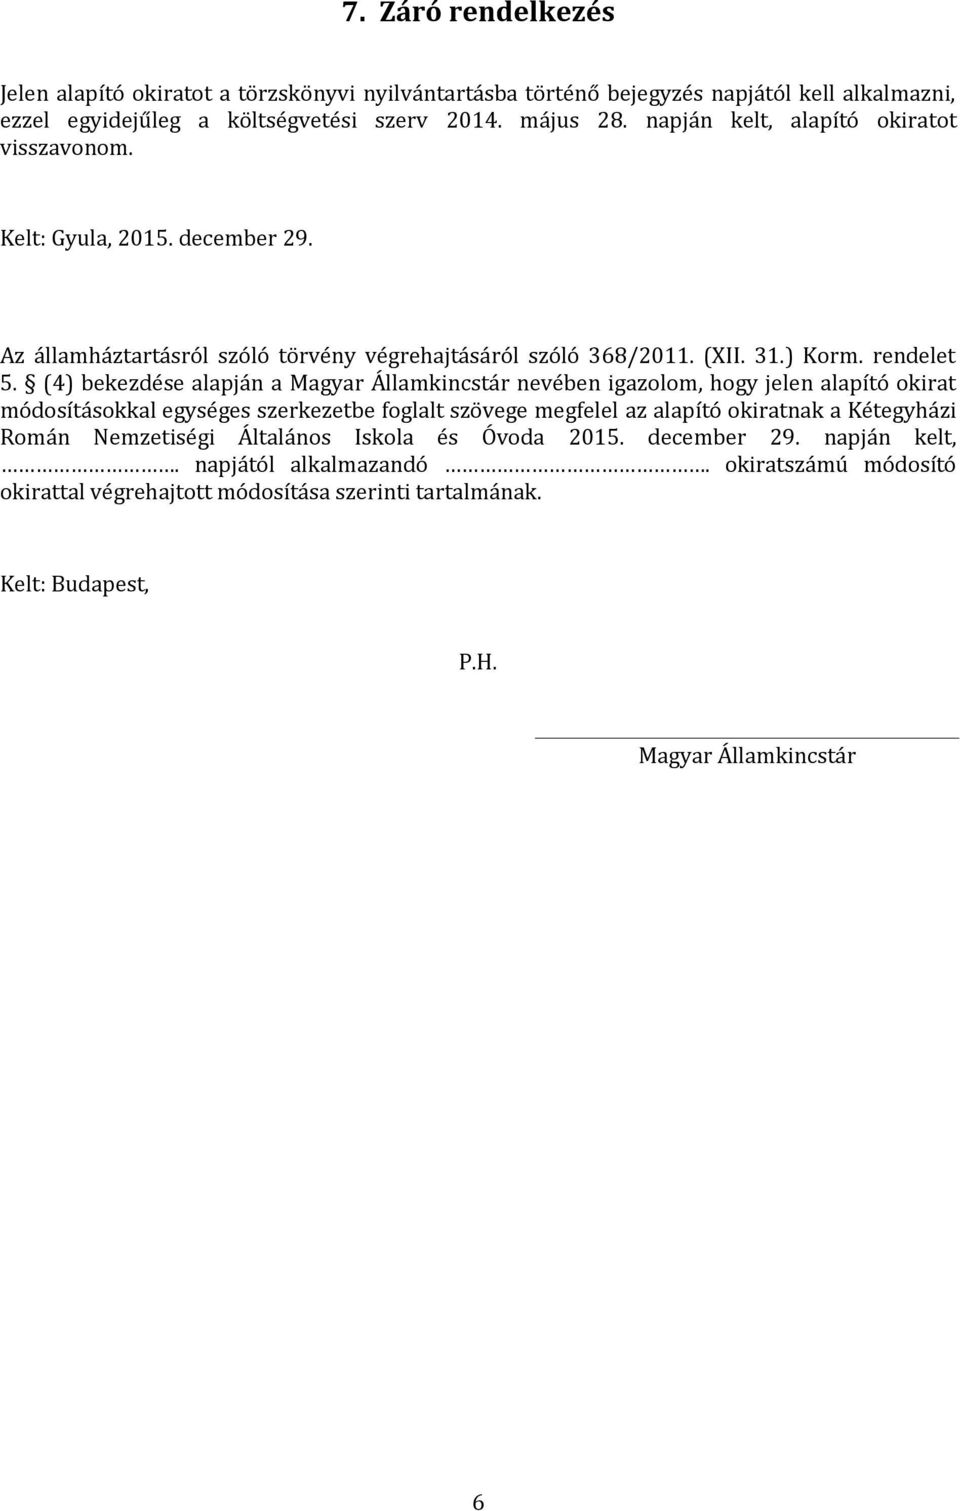 (4) bekezdése alapján a Magyar Államkincstár nevében igazolom, hogy jelen alapító okirat módosításokkal egységes szerkezetbe foglalt szövege megfelel az alapító okiratnak a Kétegyházi